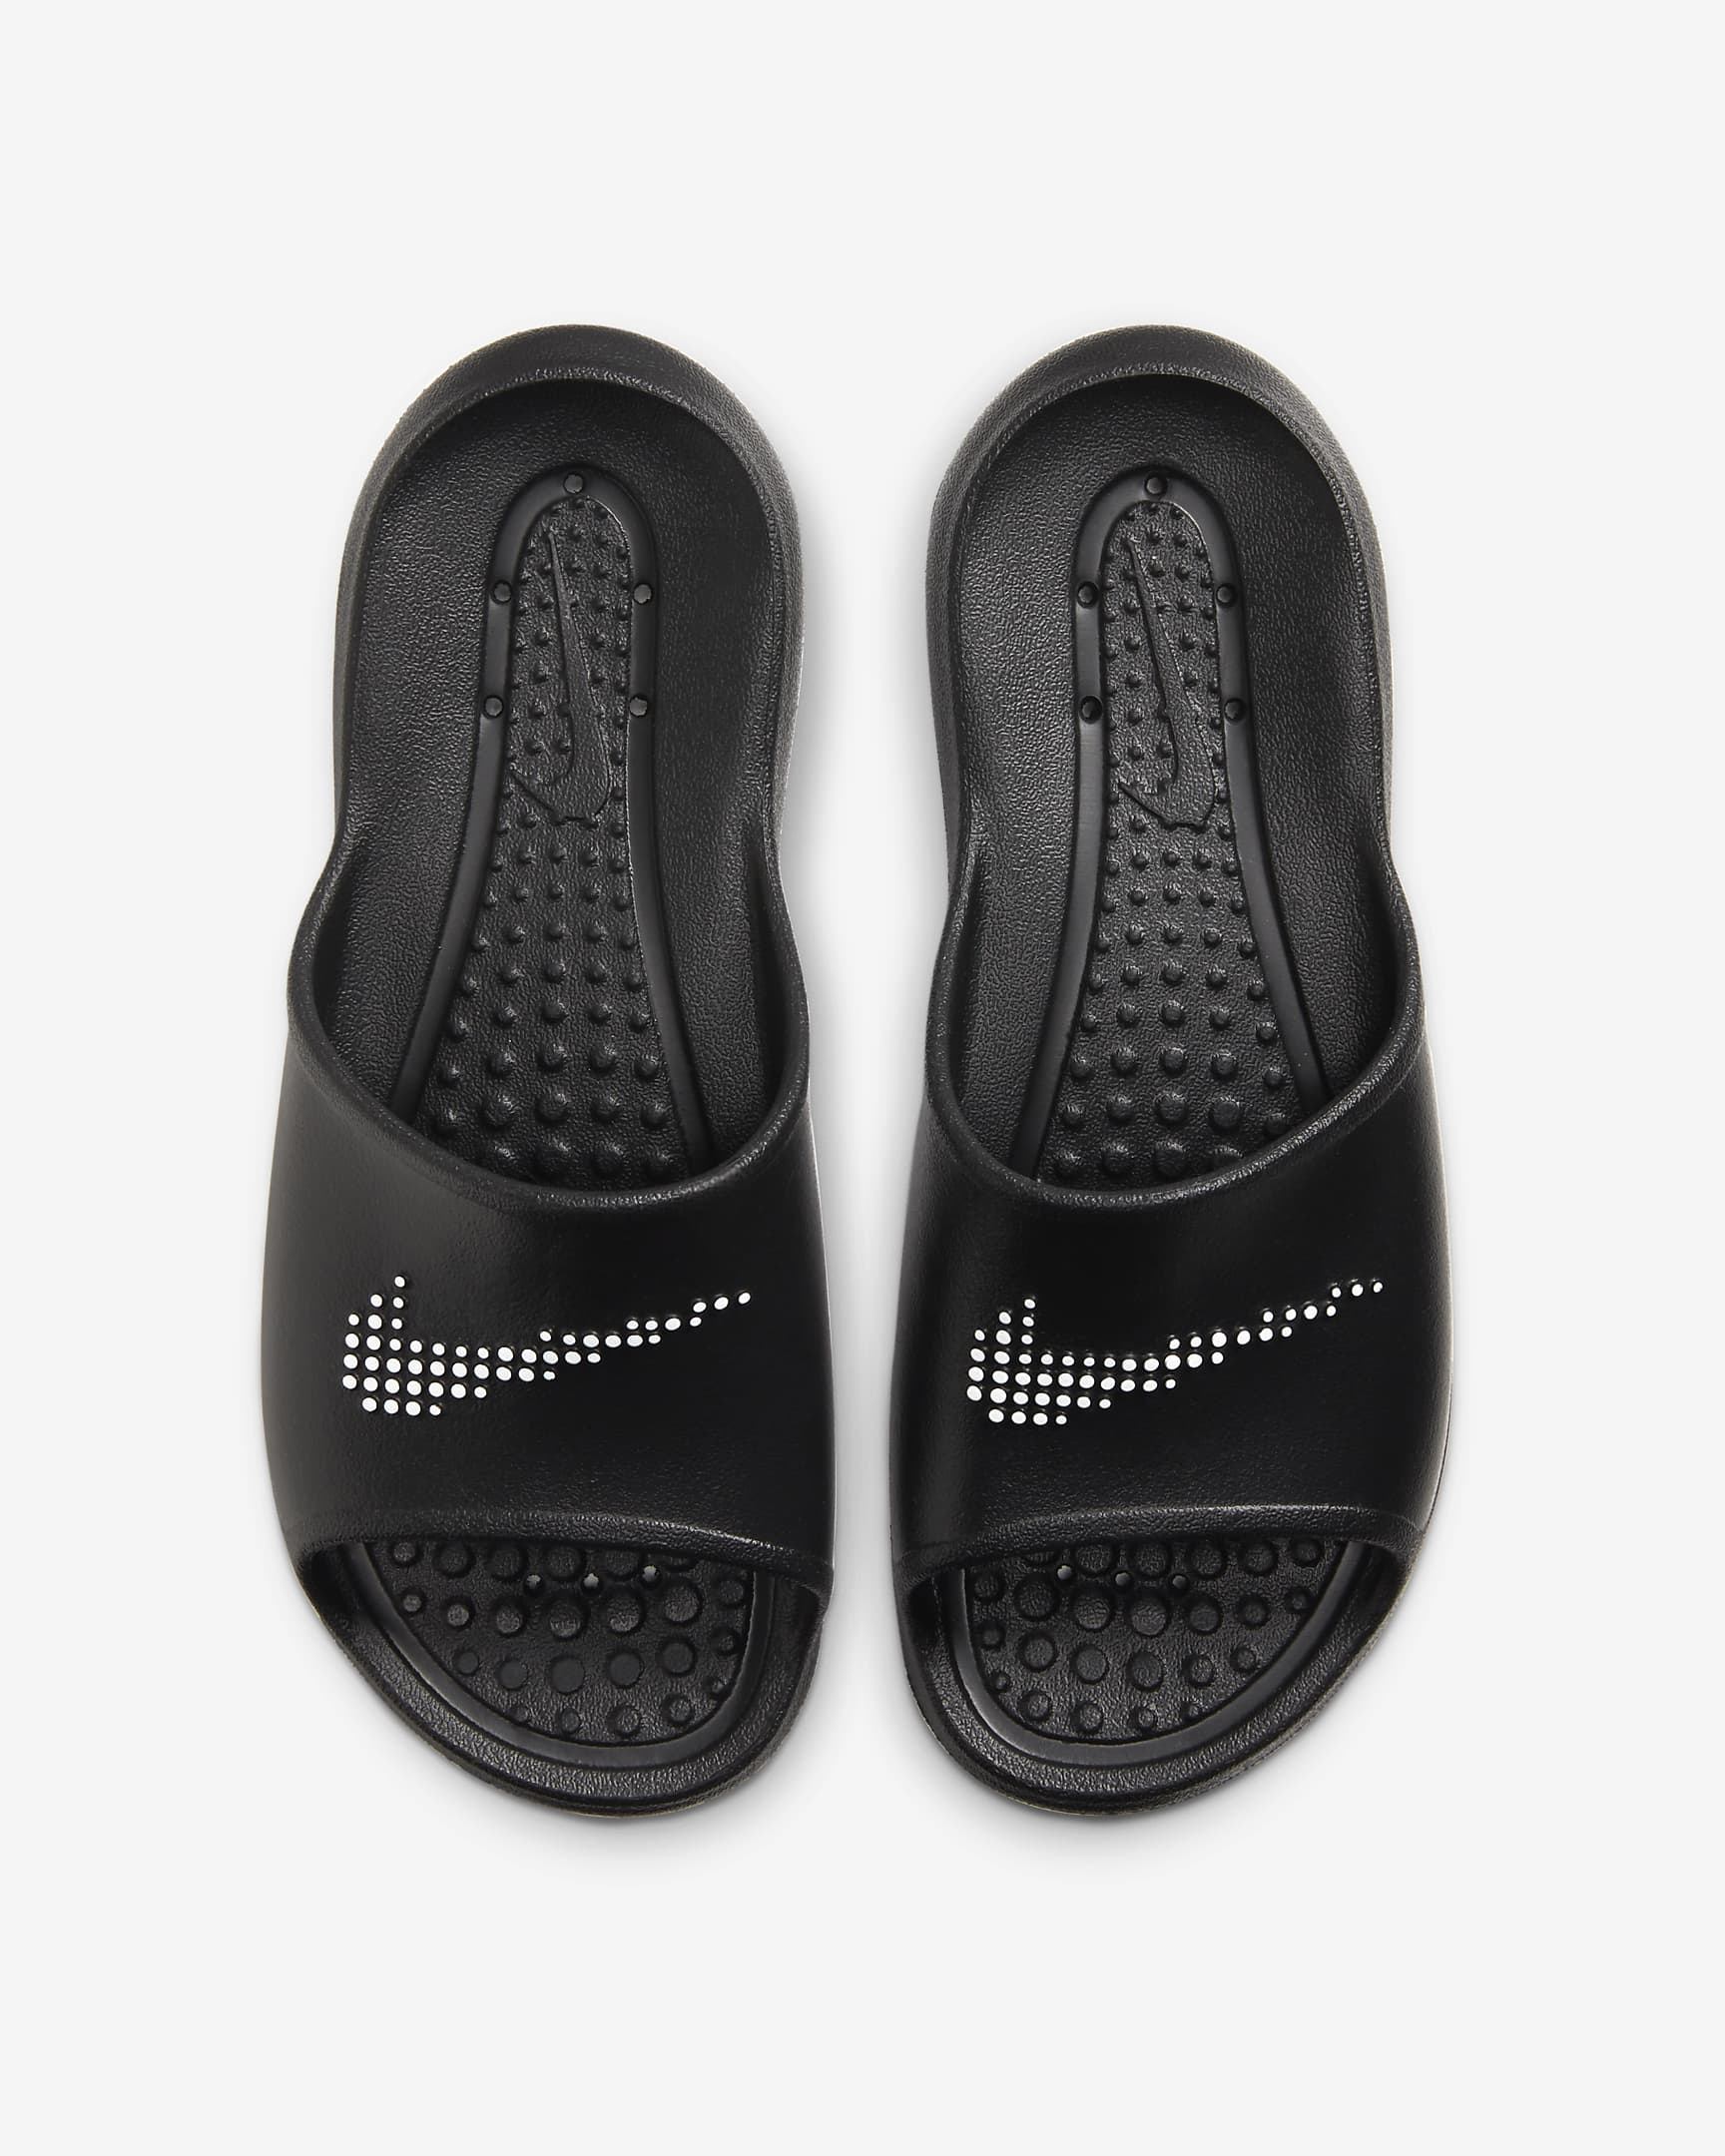 Nike Victori One Slides - Black/White